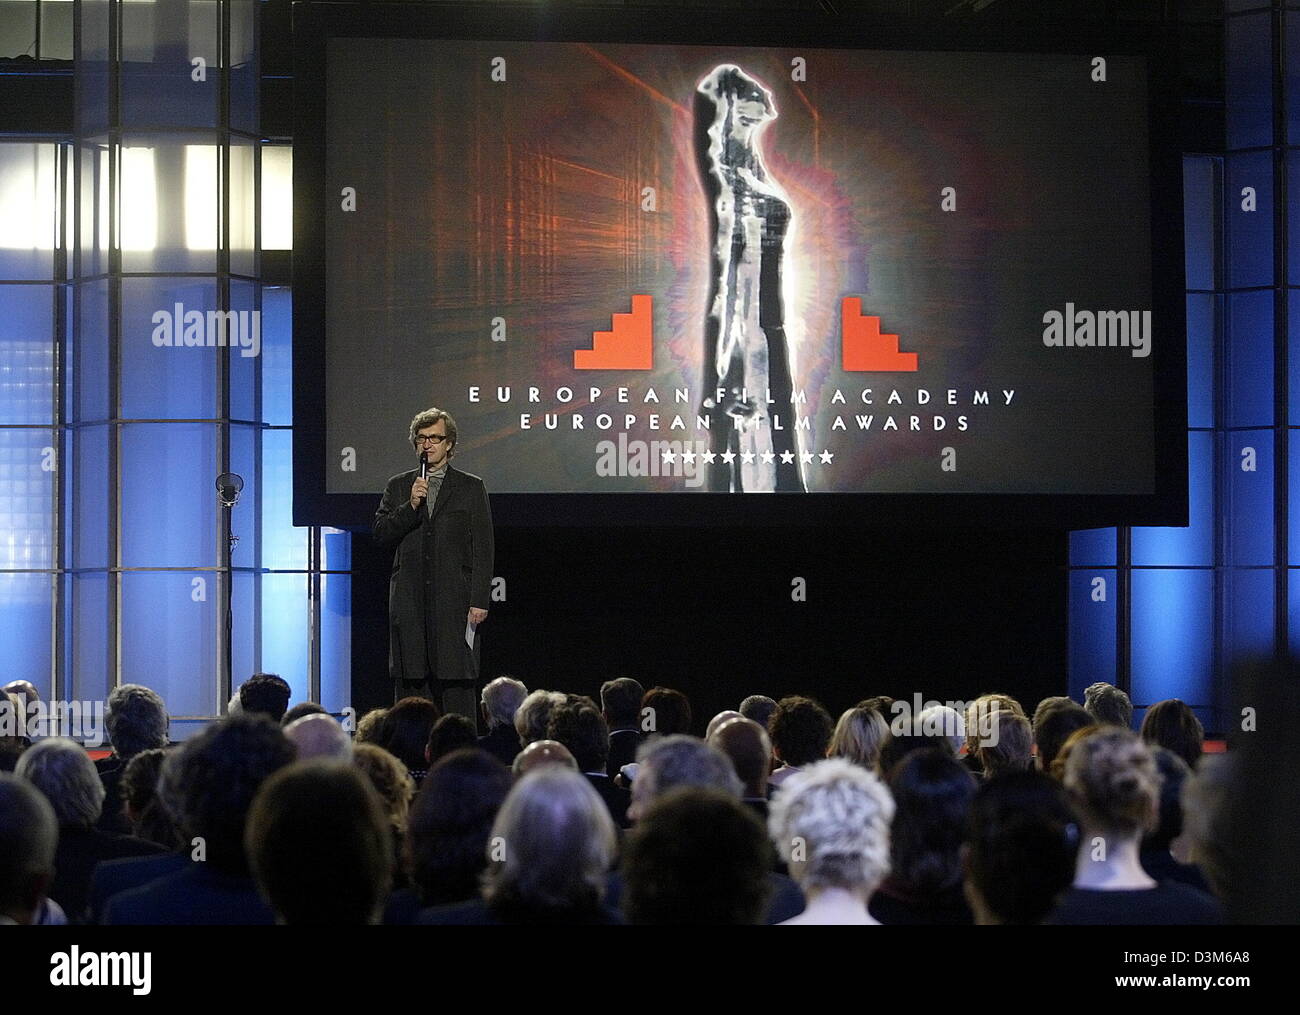 (Dpa) - Wim Wenders, Presidente de la Academia de Cine Europeo, habla durante la ceremonia de los European Film Awards, en Berlín, Alemania, 03 de diciembre de 2005. La European Film Academy Award fue otorgado en 17 categorías. Foto: Marcus Brandt Foto de stock